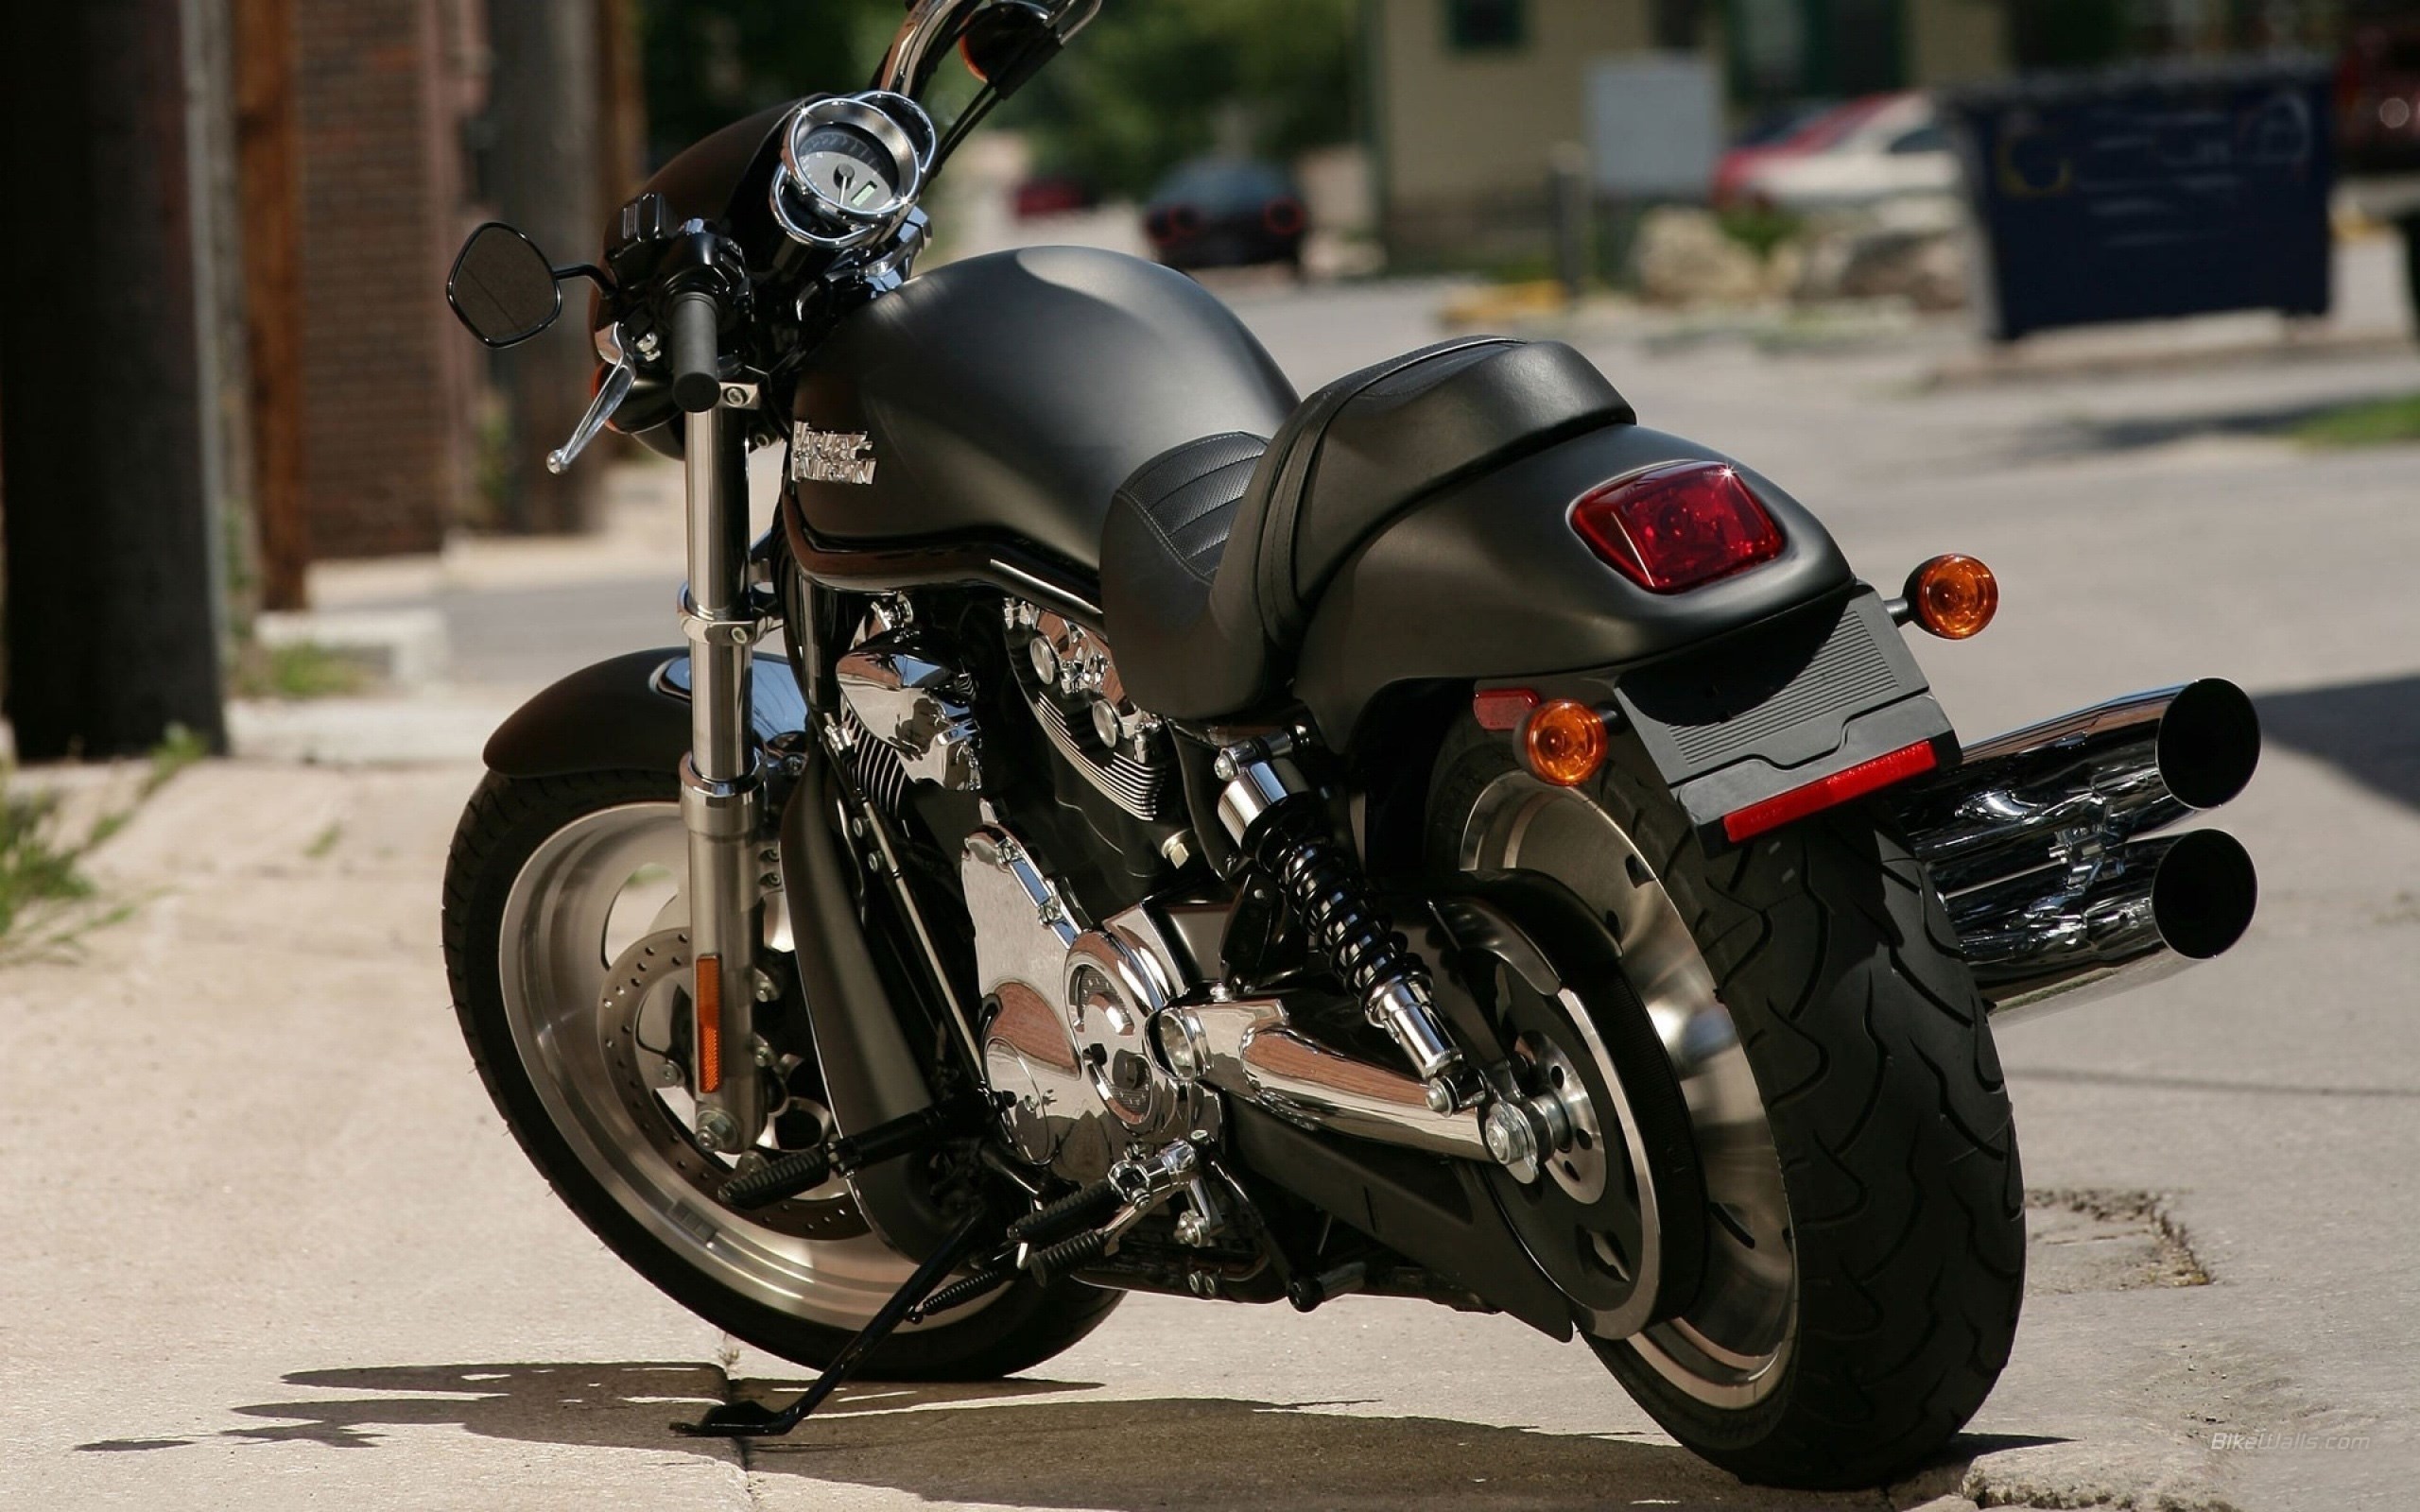 Harley Davidson Back View Bike Wallpaper Hd 2560x1600